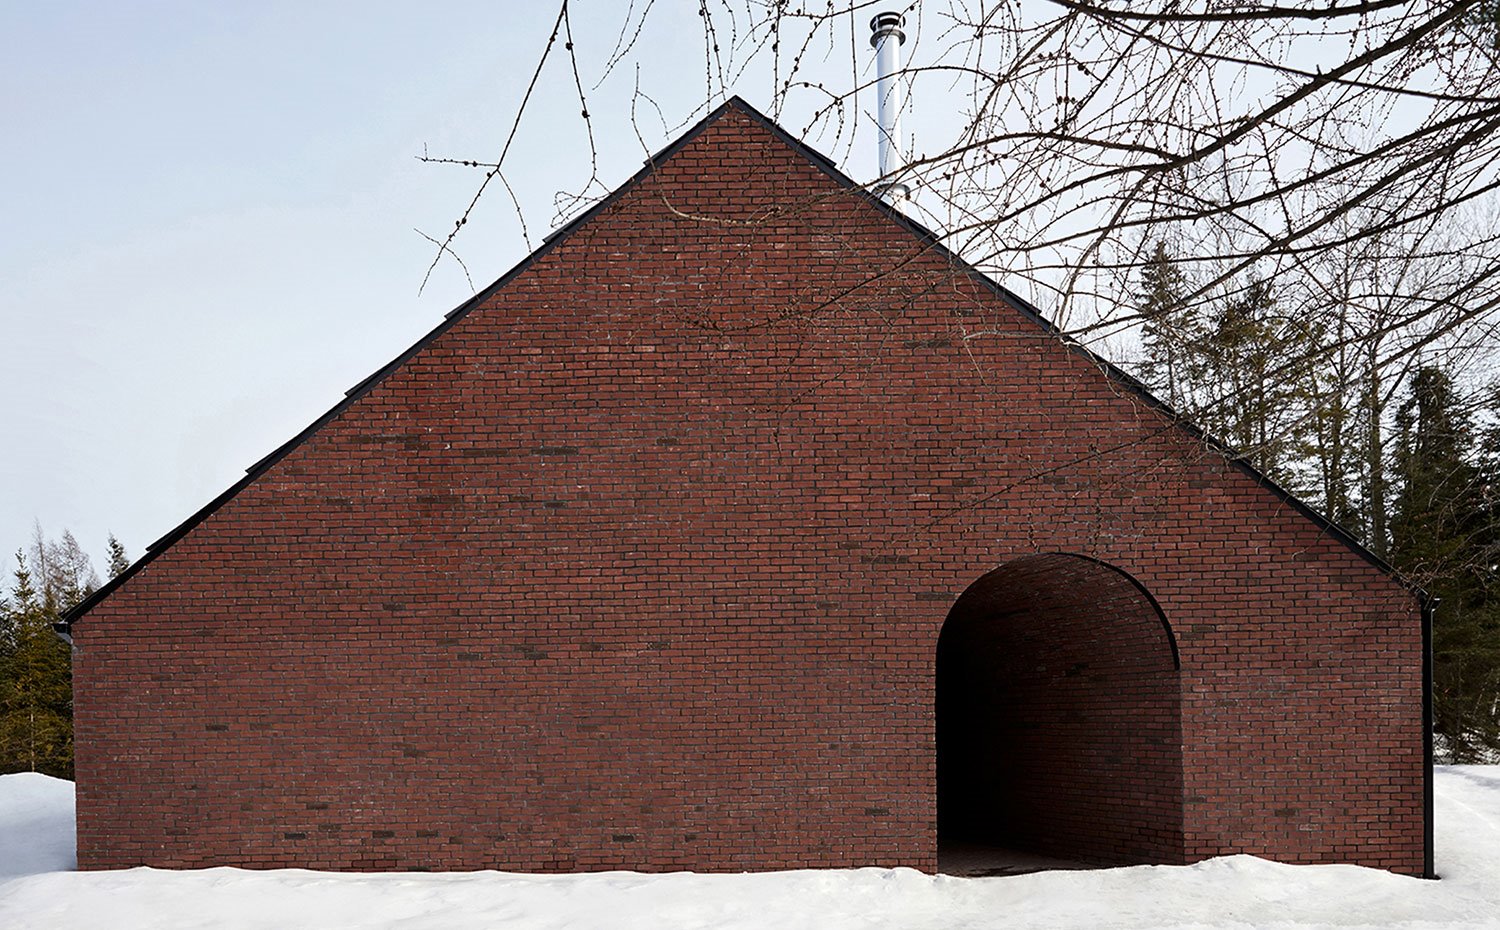 Exterior compacto de la vivienda con fachada en ladrillo visto y entorno natural nevado